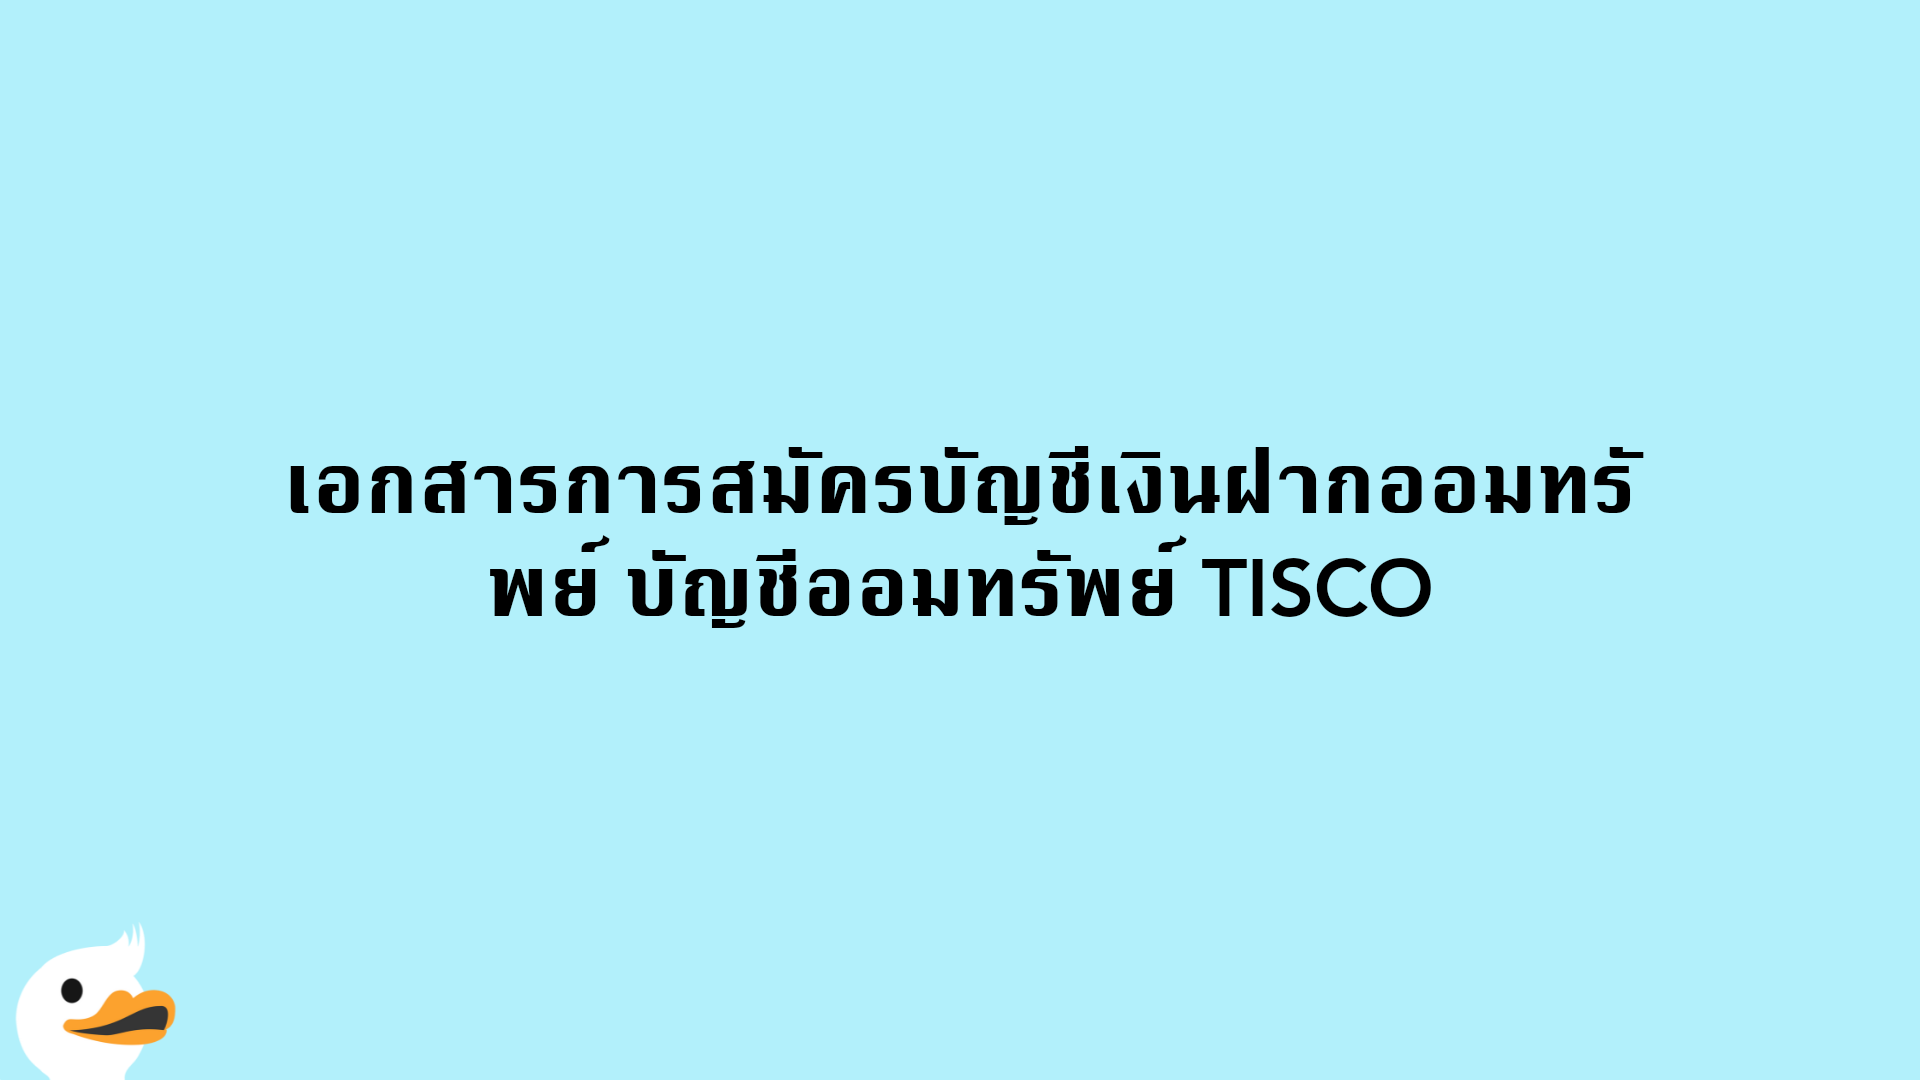 เอกสารการสมัครบัญชีเงินฝากออมทรัพย์ บัญชีออมทรัพย์ TISCO